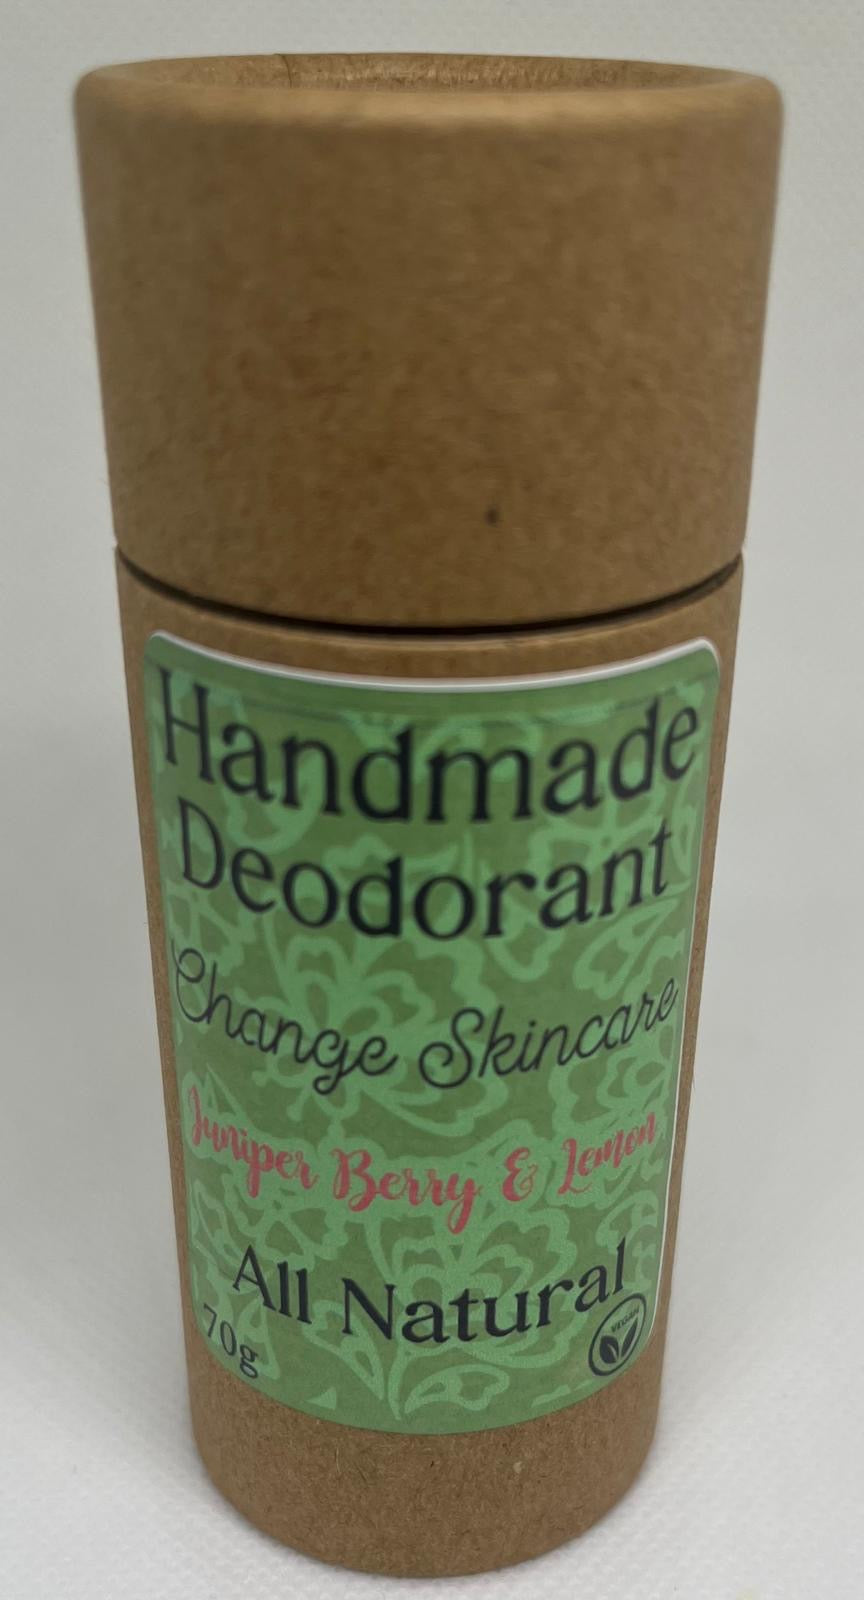 Natural Deodorant with Juniper Berry & Lemon